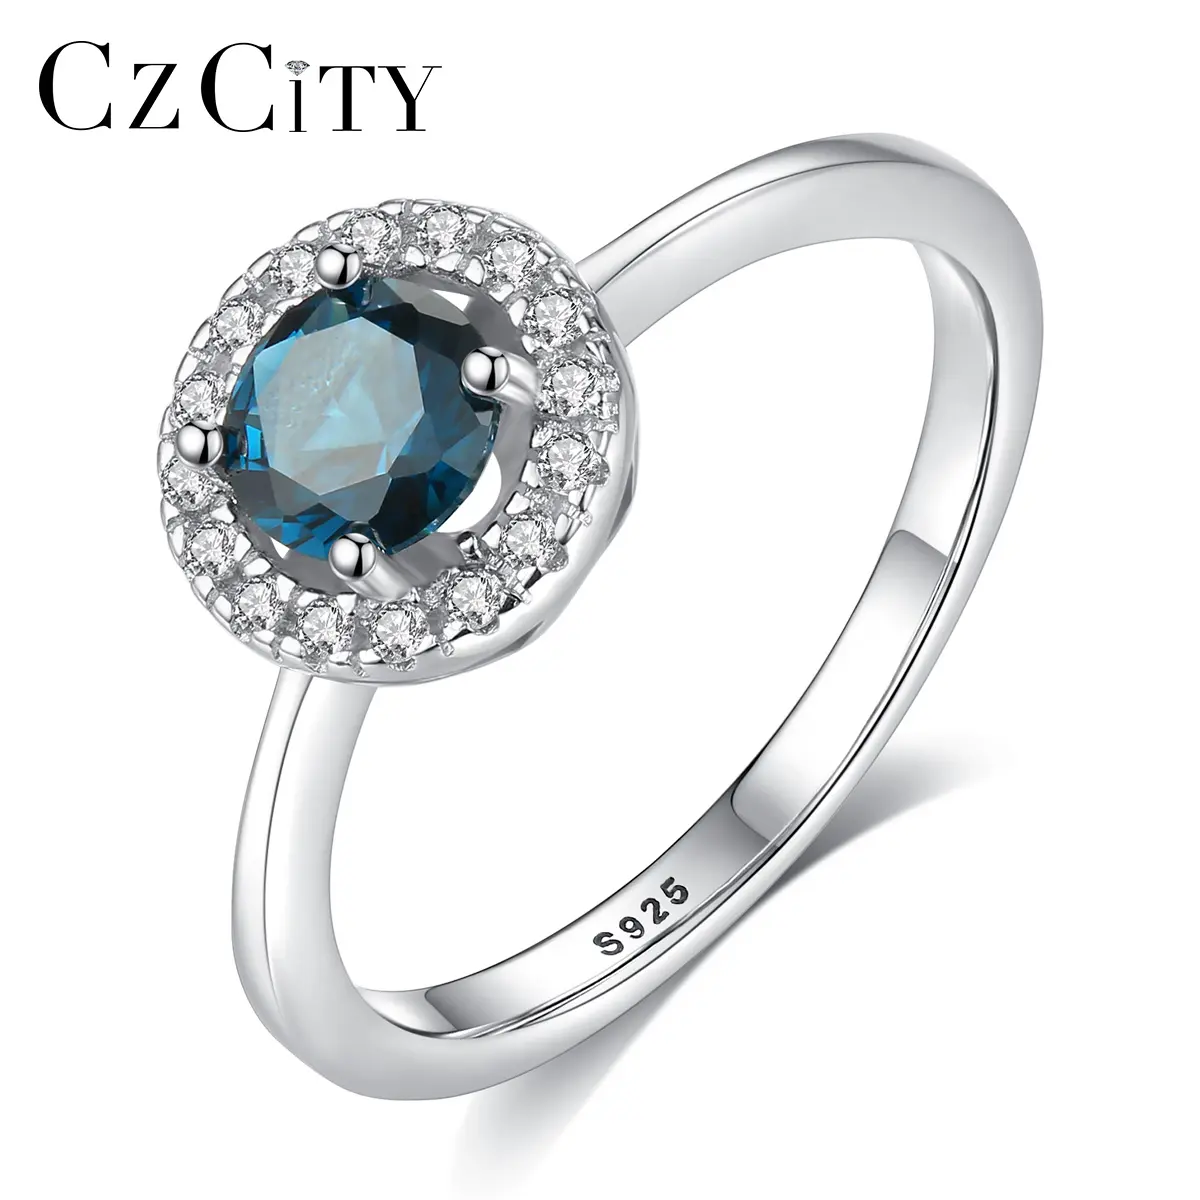 CZCITY แหวนหมั้นเซอร์คอนชุบทองสีขาว,เครื่องประดับเงินแท้ S925แหวนพลอย CZ